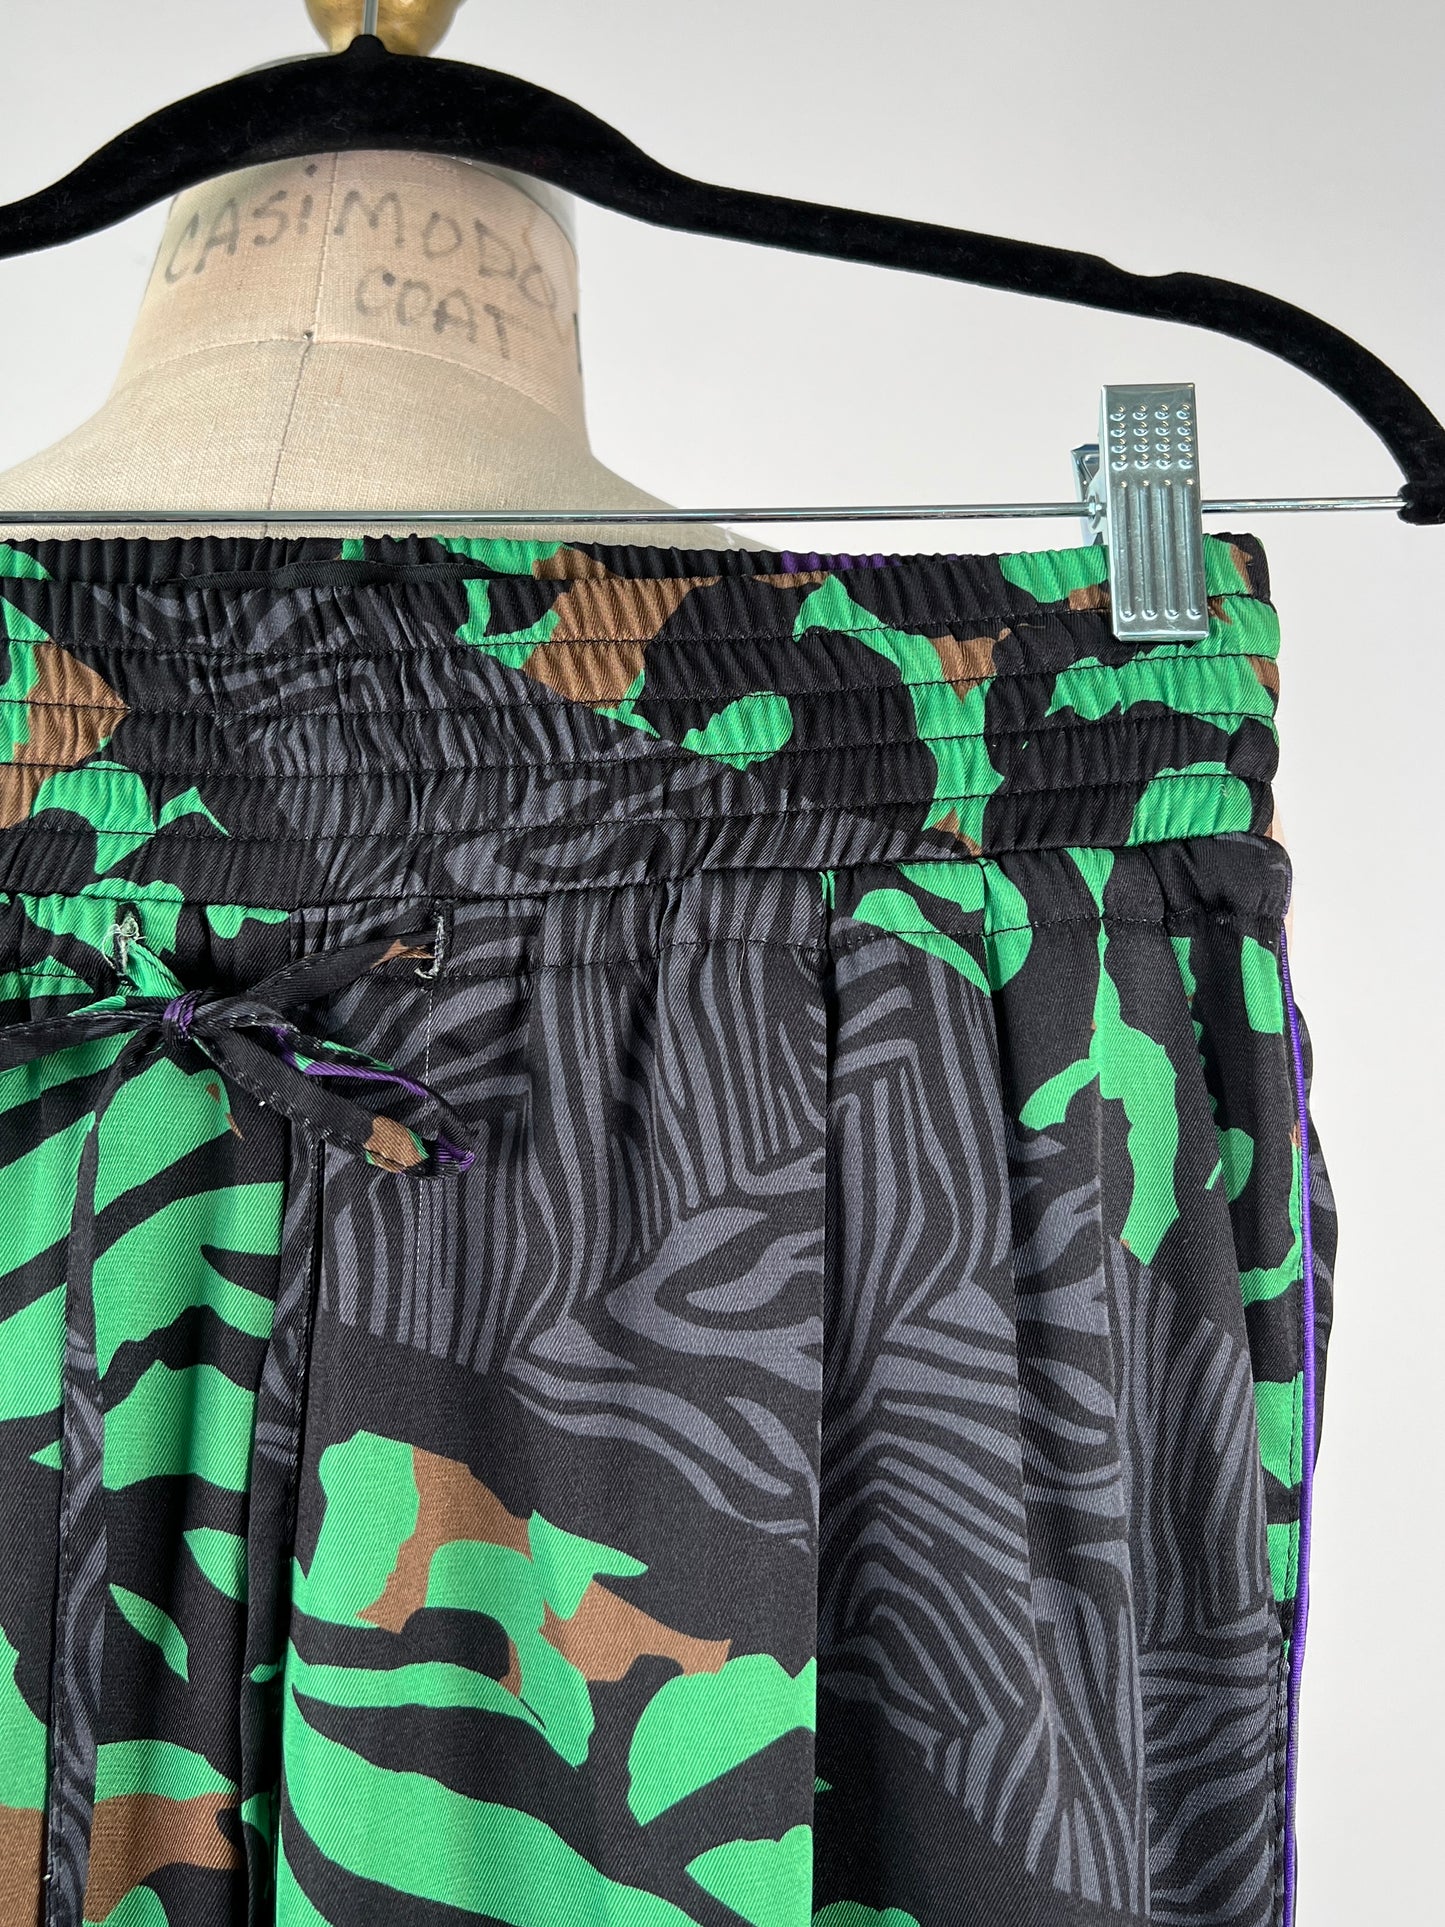 Pantalon en satin imprimé zèbre et léopard vert et mauve (XXS)